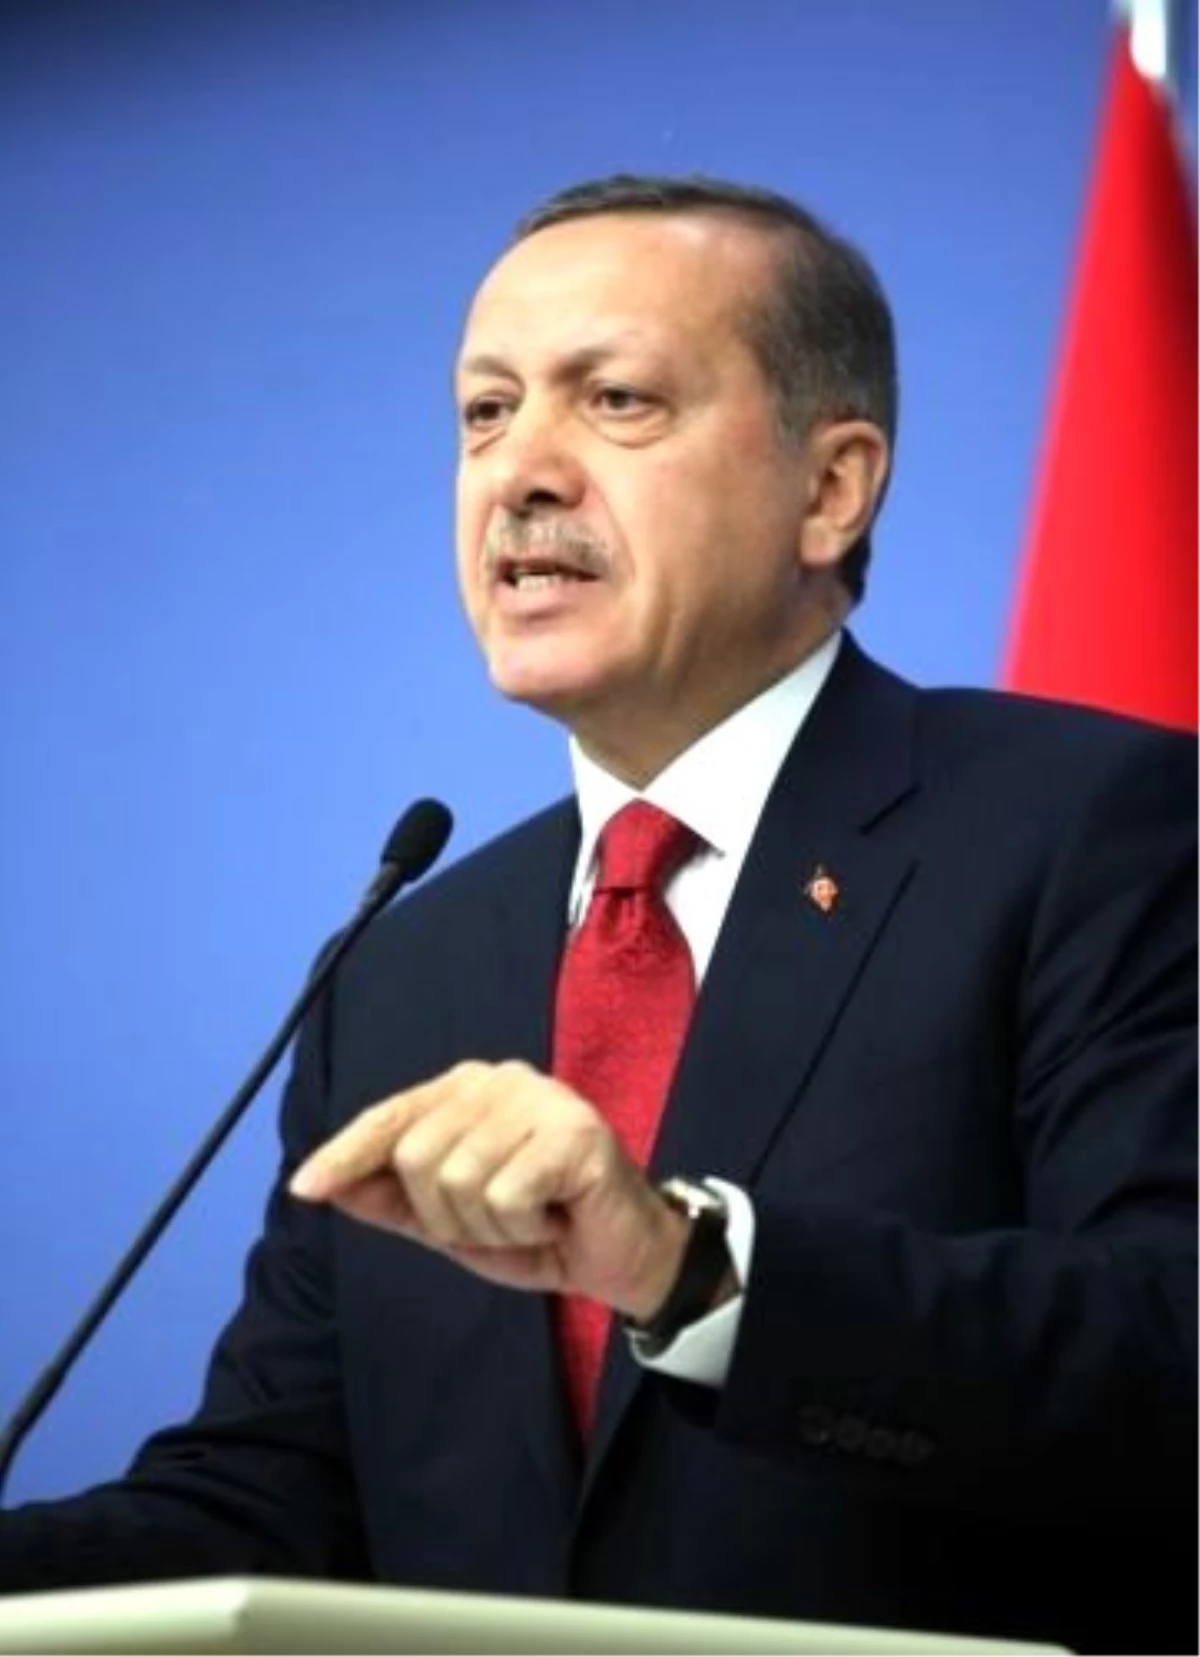  Başbakan Erdoğan(2/son): "O Makamdan Özür Dile"